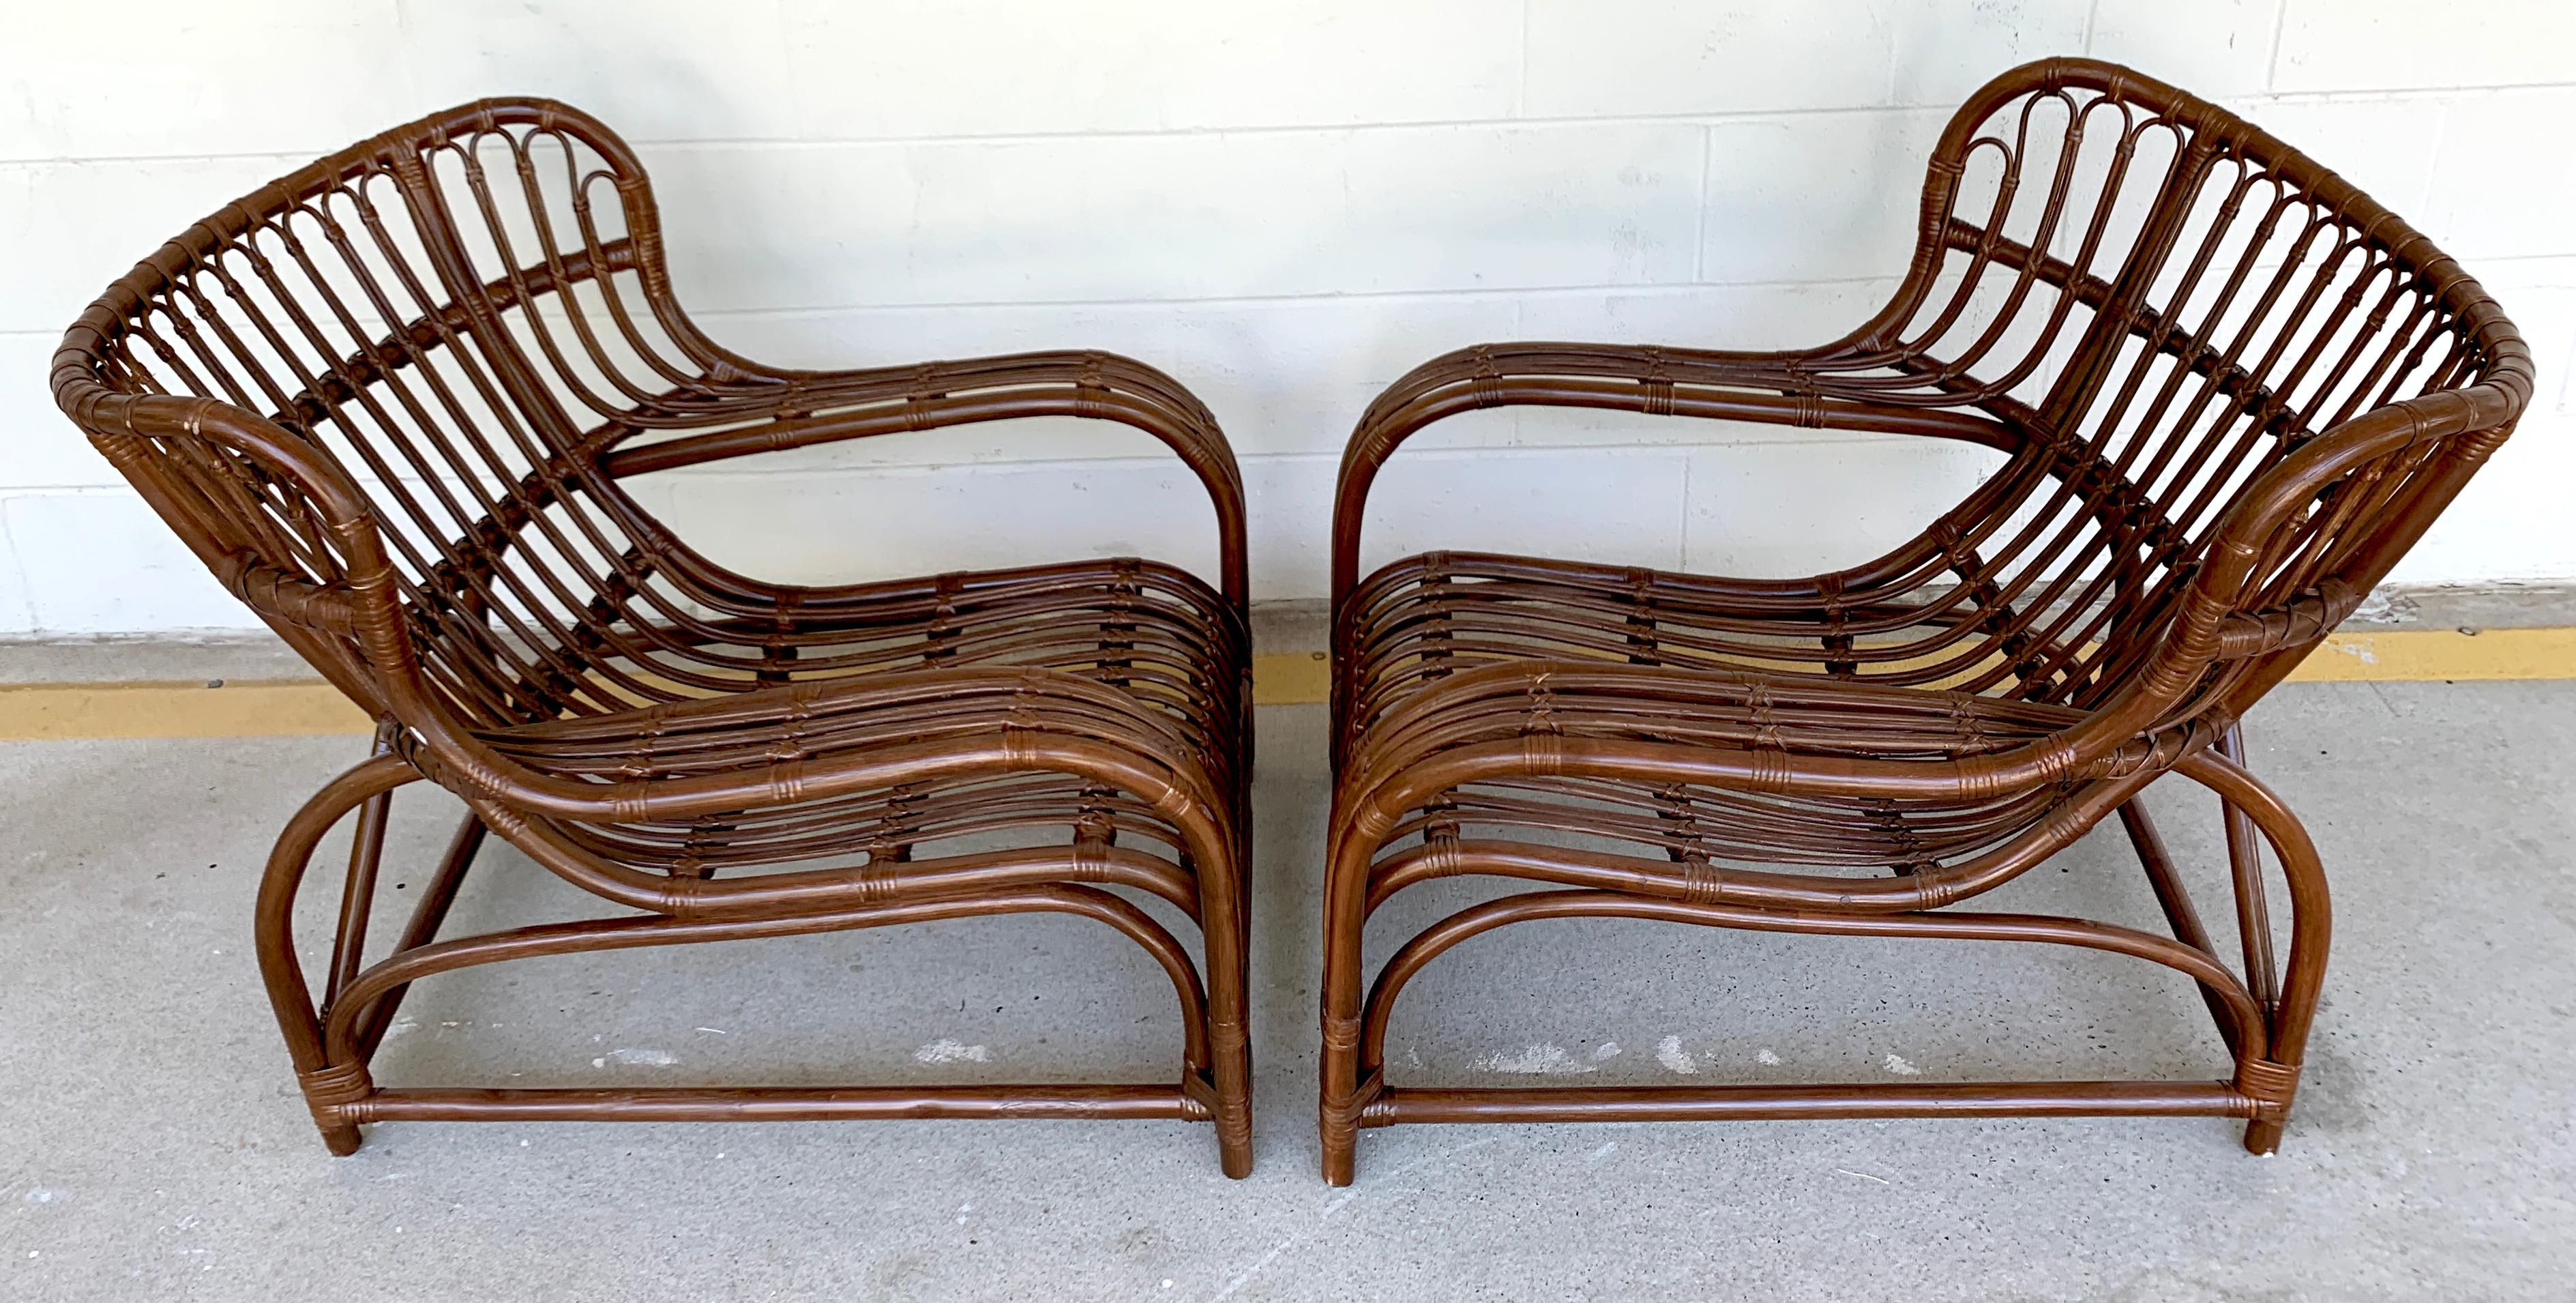 Pair of midcentury rattan scoop chairs, restored
Measures: 26